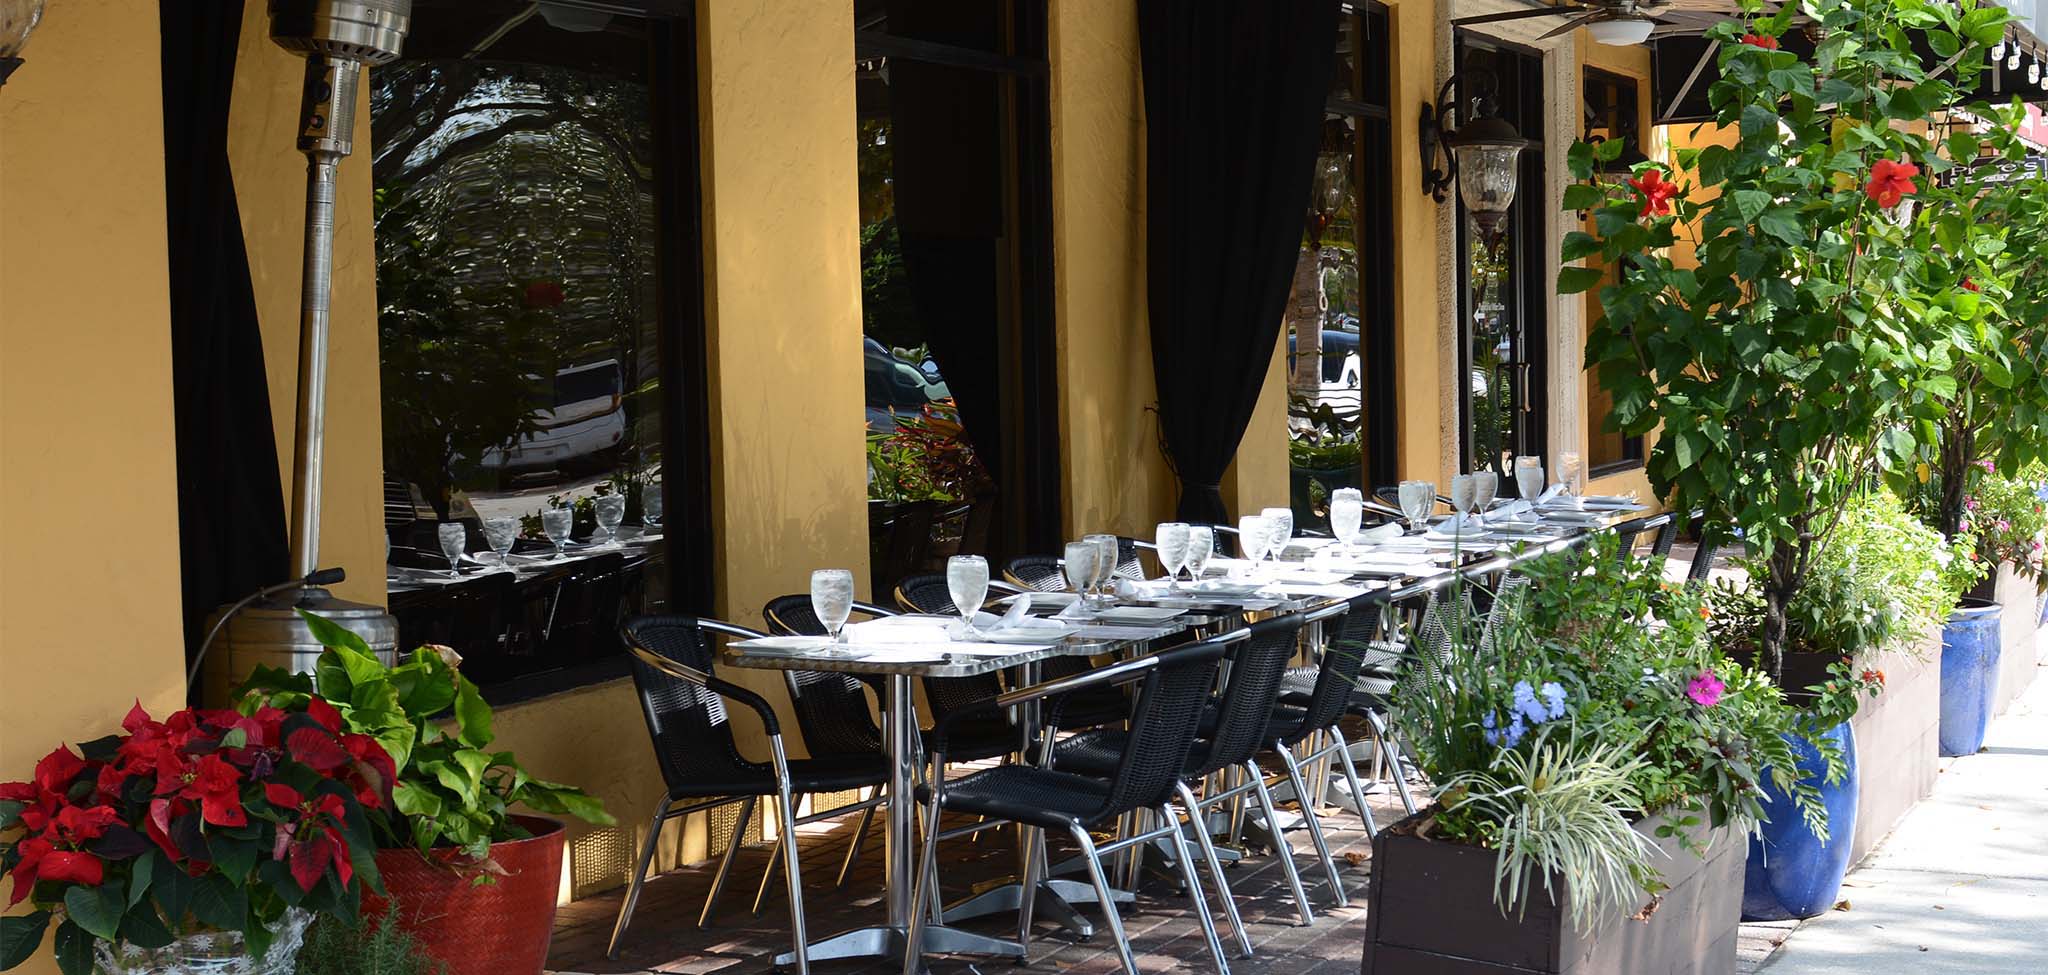 Mediterranean restaurant offering Greek cuisine near Lake Mary, Sanford, Altamonte springs, Deland, Oviedo and Orlando